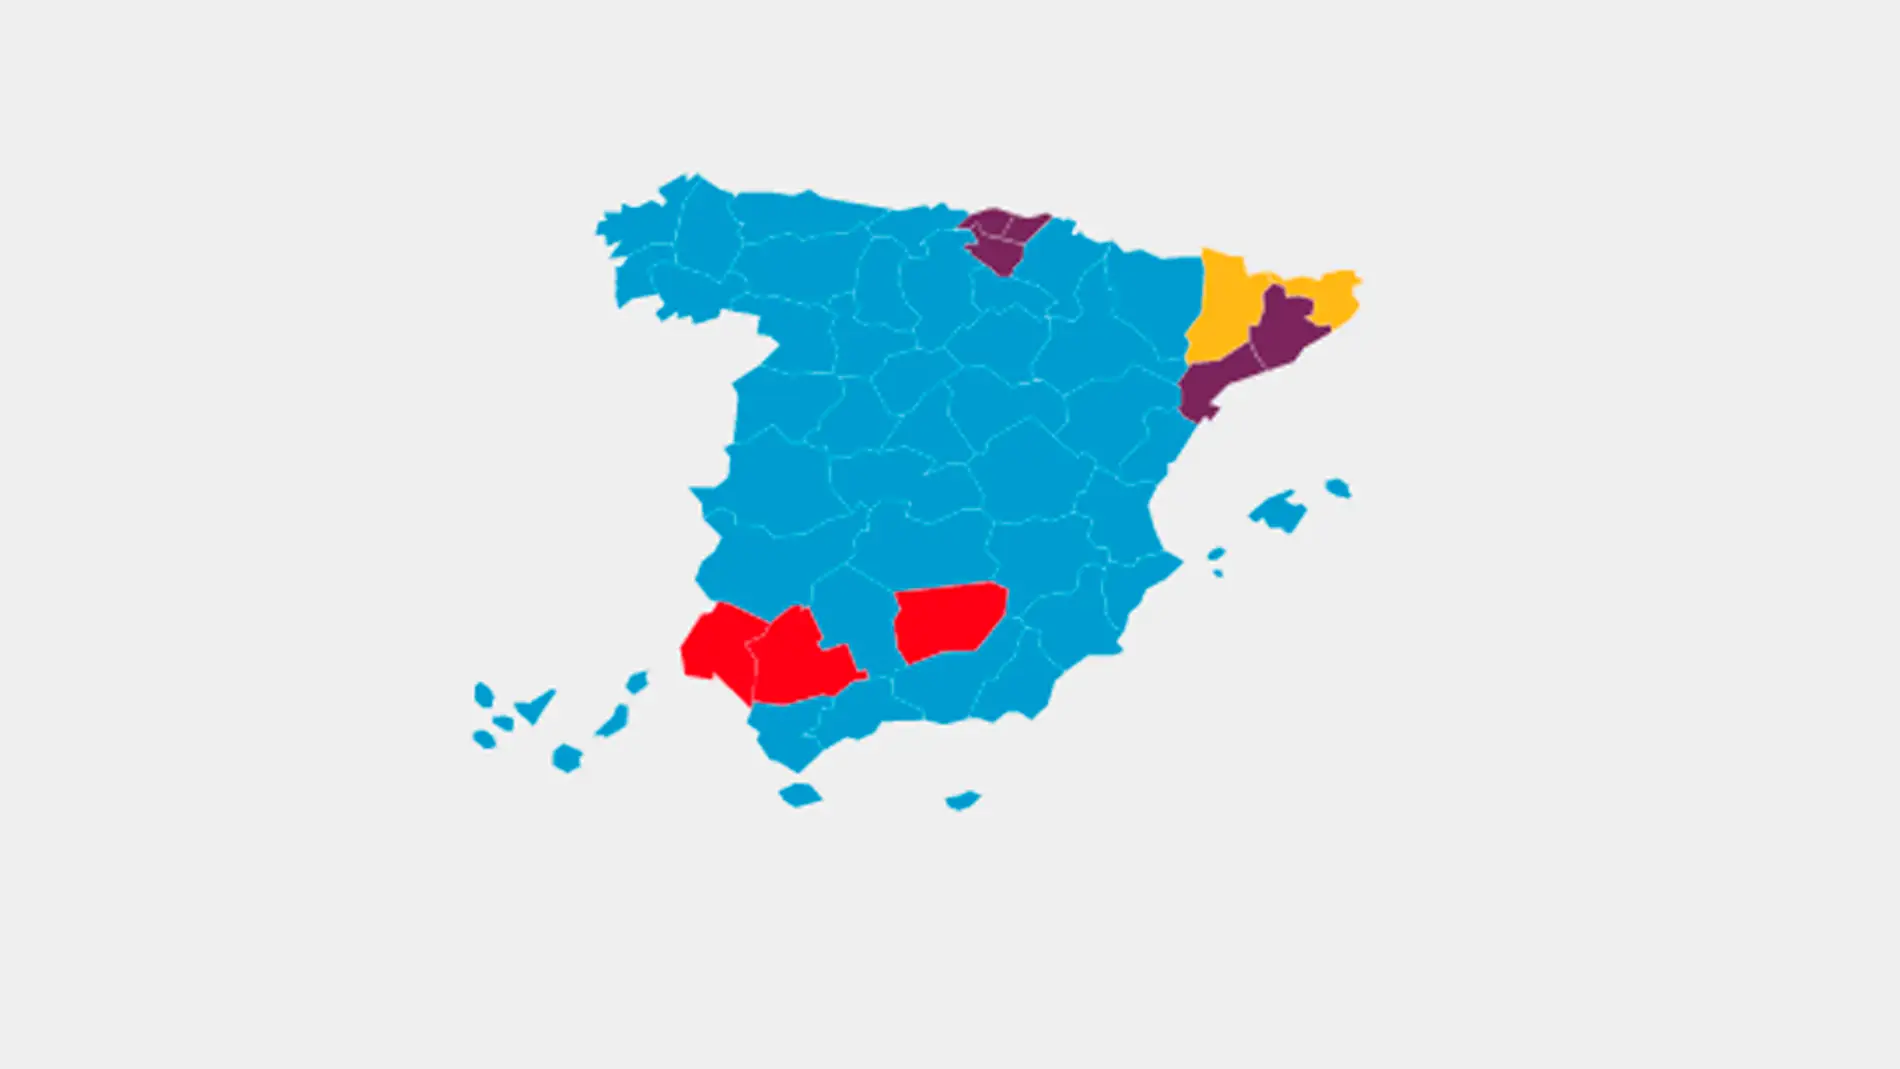 Mapa de España según el partido más votado el 26J